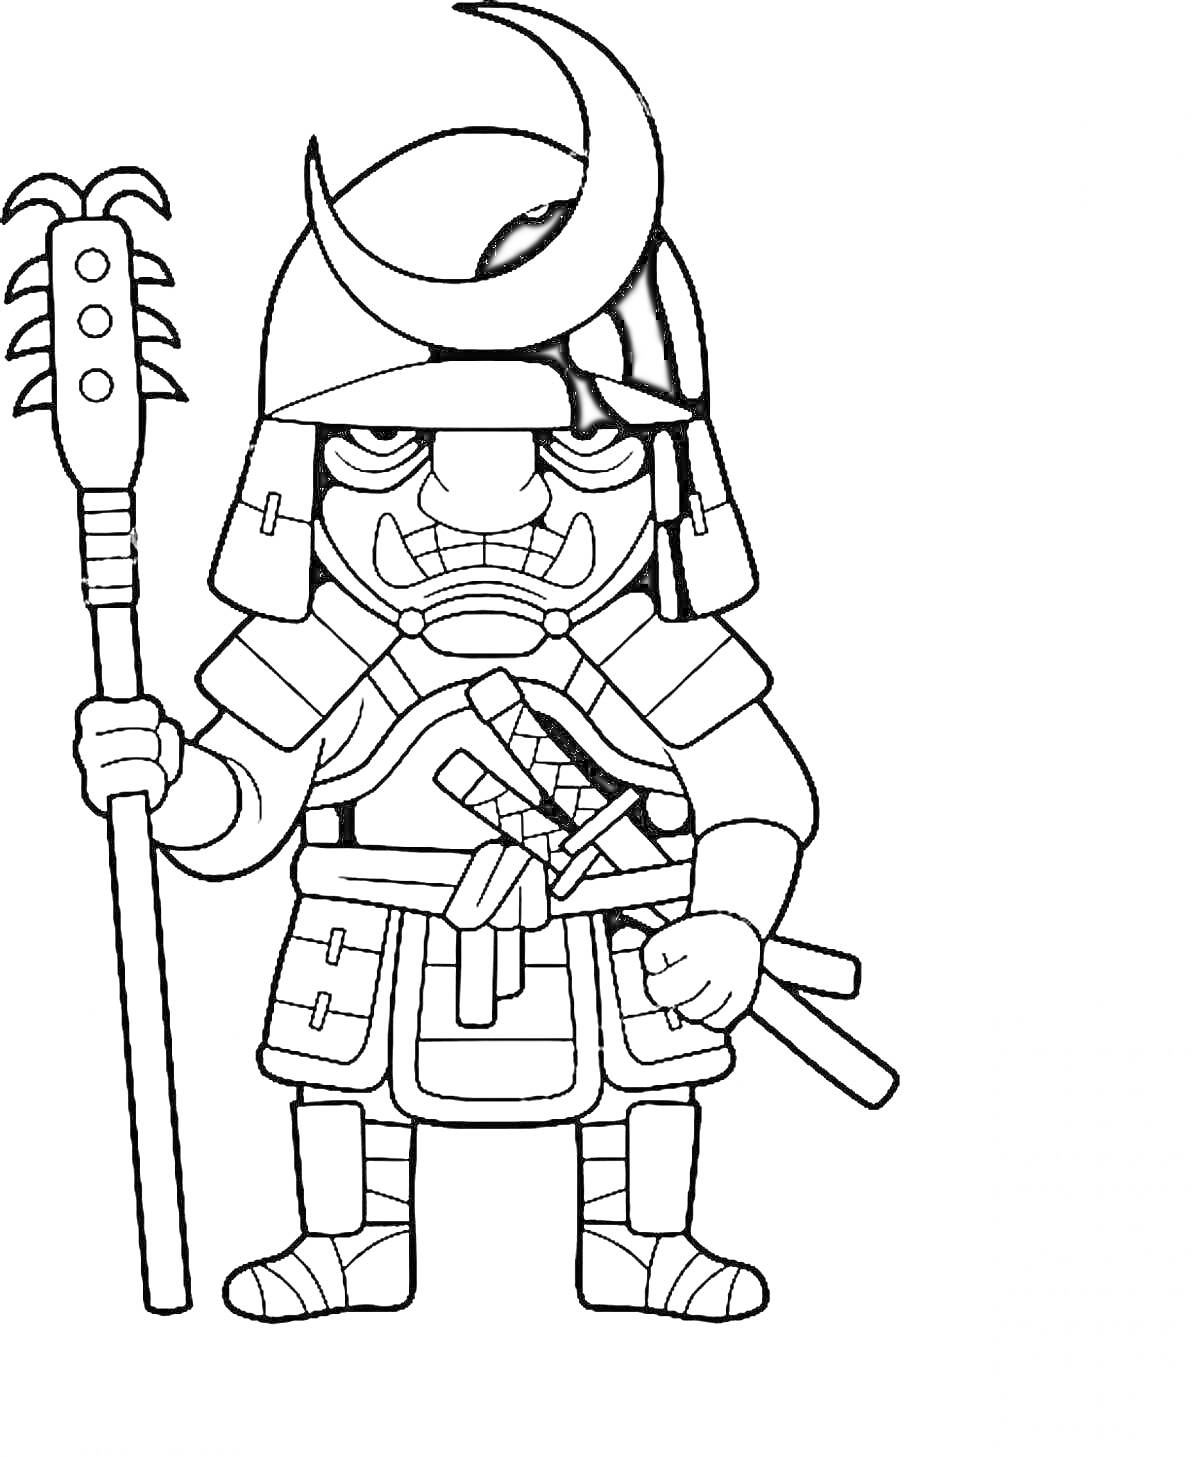 Раскраска Сегун в традиционных доспехах с полумесяцем на шлеме, двумя мечами и булавой